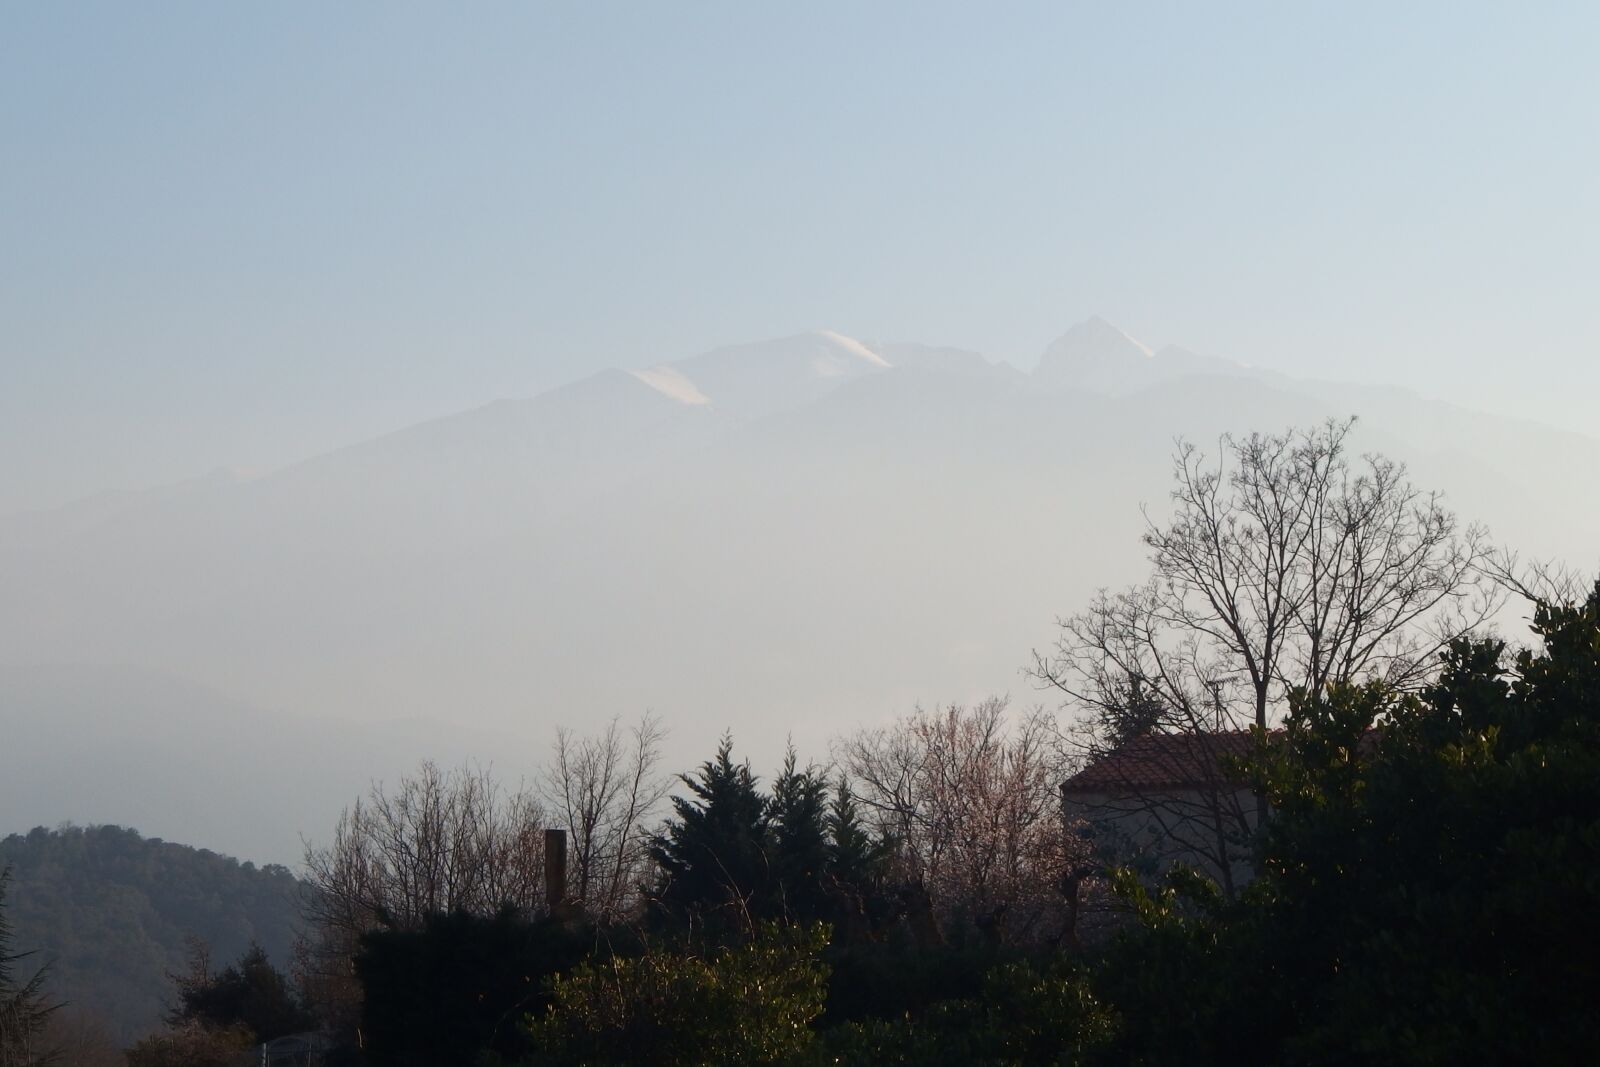 Olympus Stylus XZ-10 sample photo. Fog, mountains, landscape photography